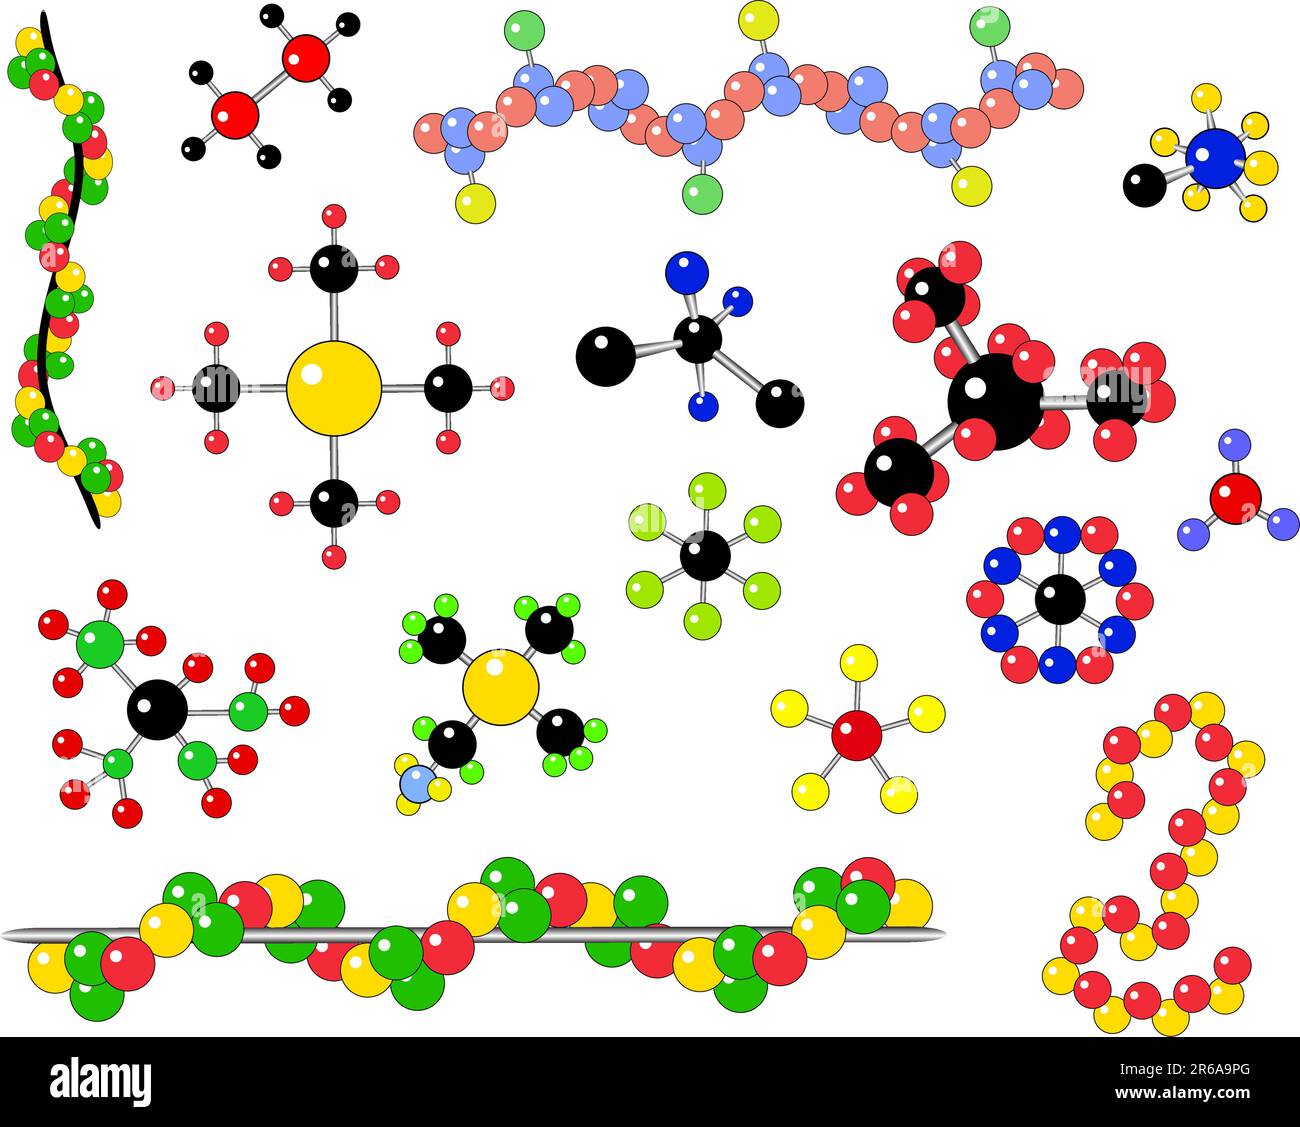 Auswahl der Vektor generische Moleküle und atomare Struktur Stock Vektor